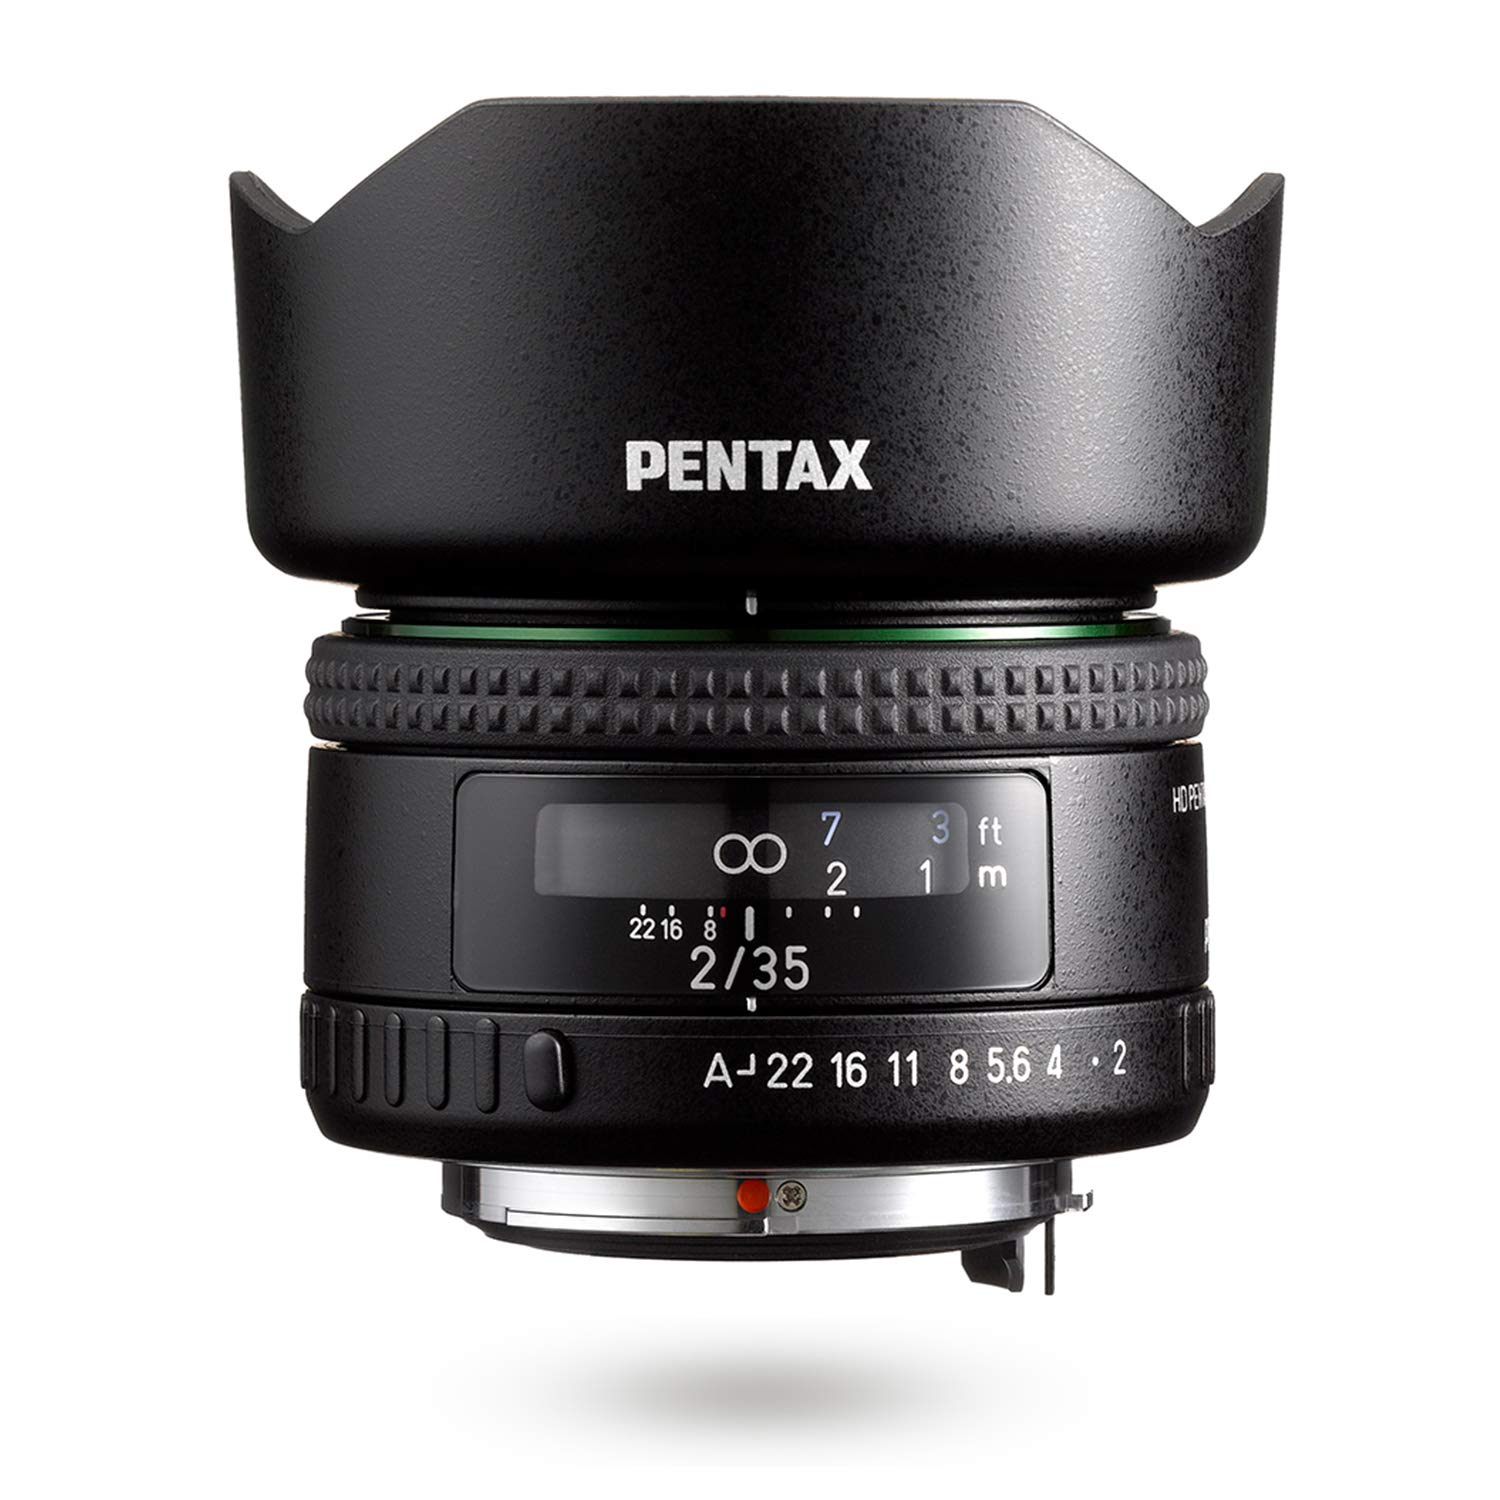 HD PENTAX-FA35mmF2 22190 Vielseitiges Weitwinkelobjektiv Die neueste HD-Beschichtung minimiert Streulicht und Geisterbilder Anti-Flecken-Beschichtung Neues Außendesign Hybride asphärische Linse